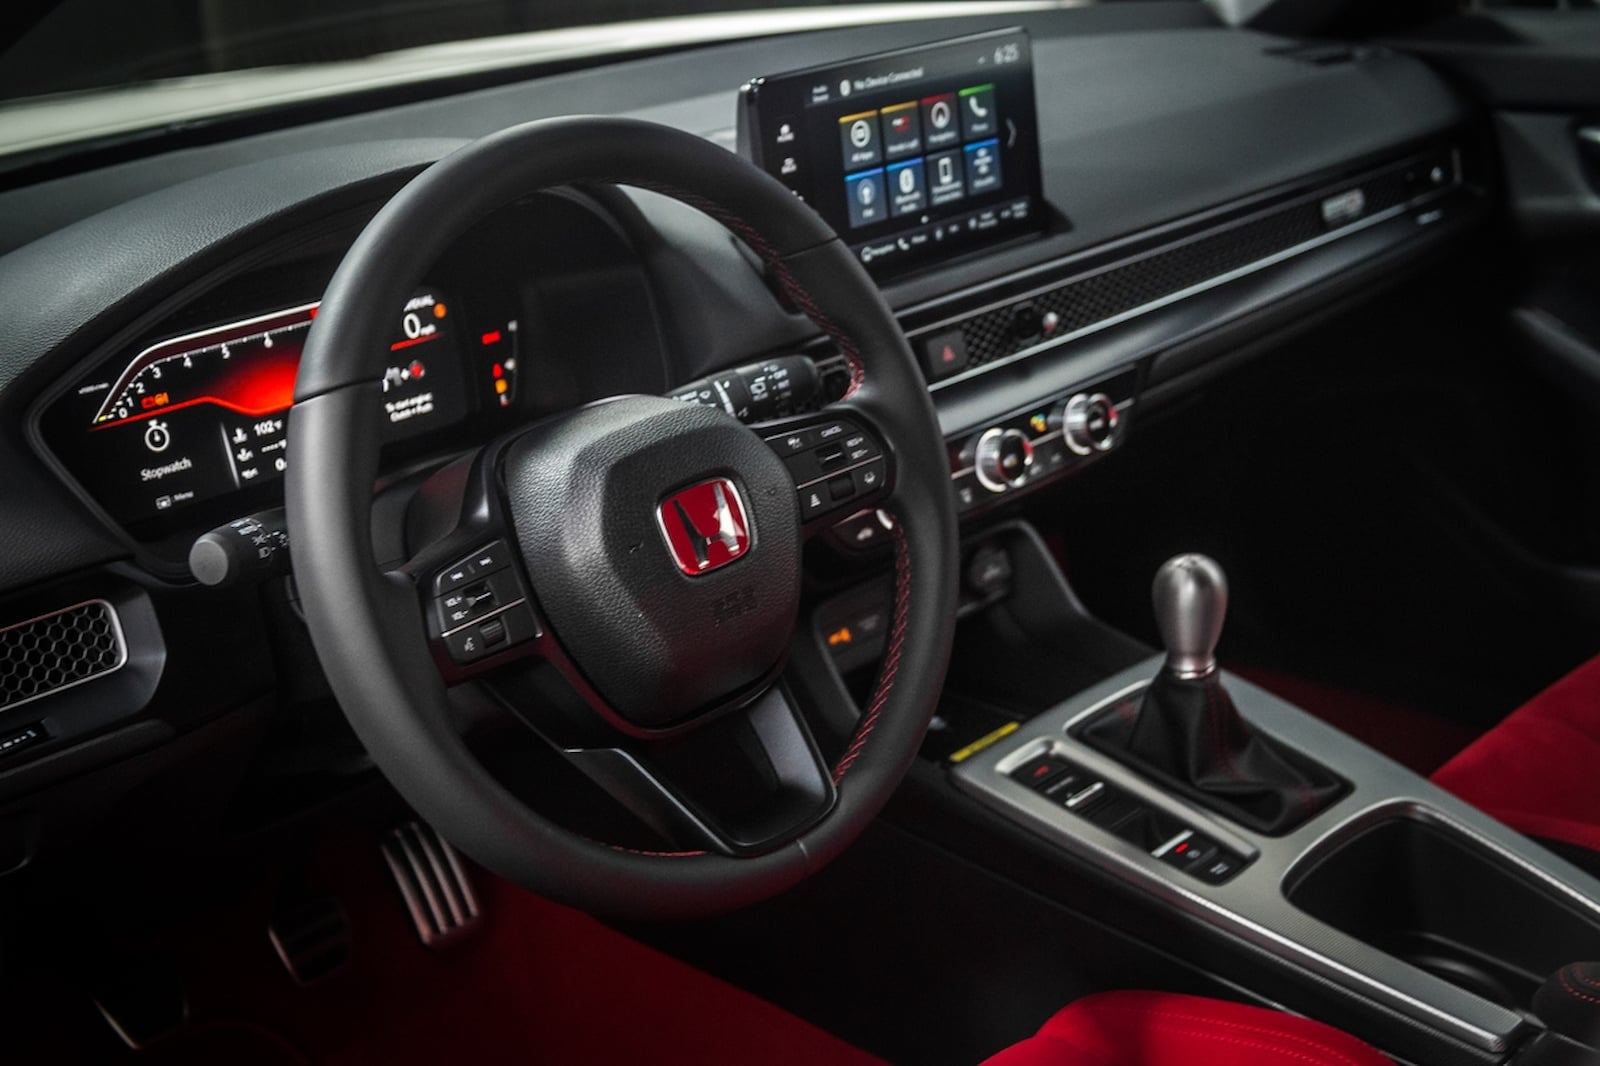 2020 Honda Civic Type R Interior Review (Beth + Matt) - YouTube